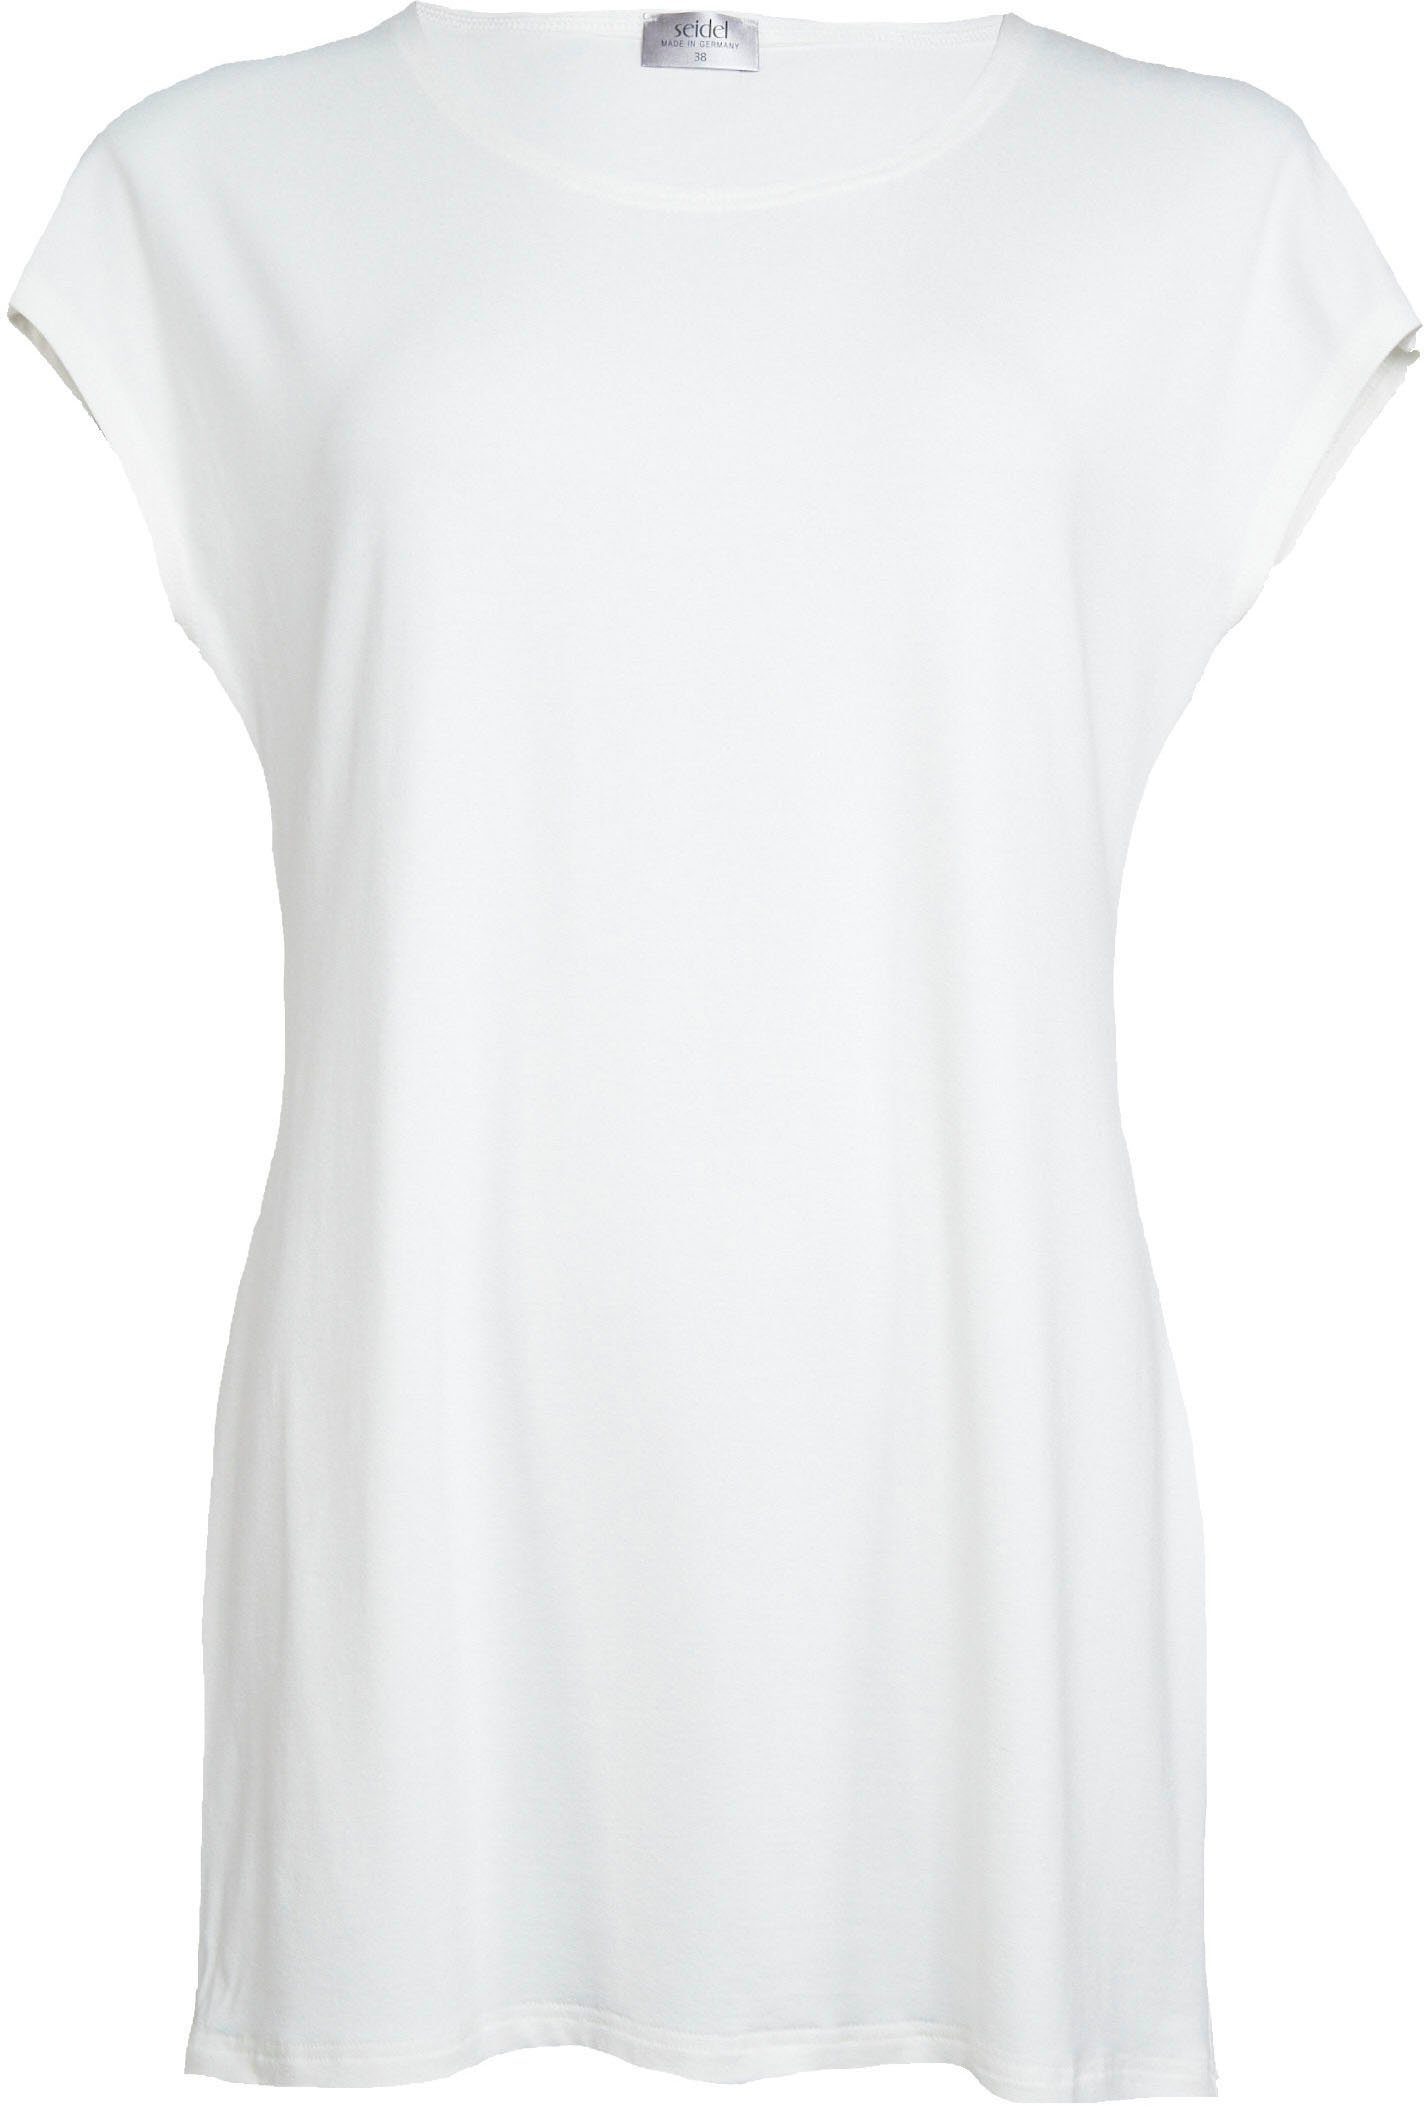 Moden in schlichtem Seidel Design offwhite Longshirt